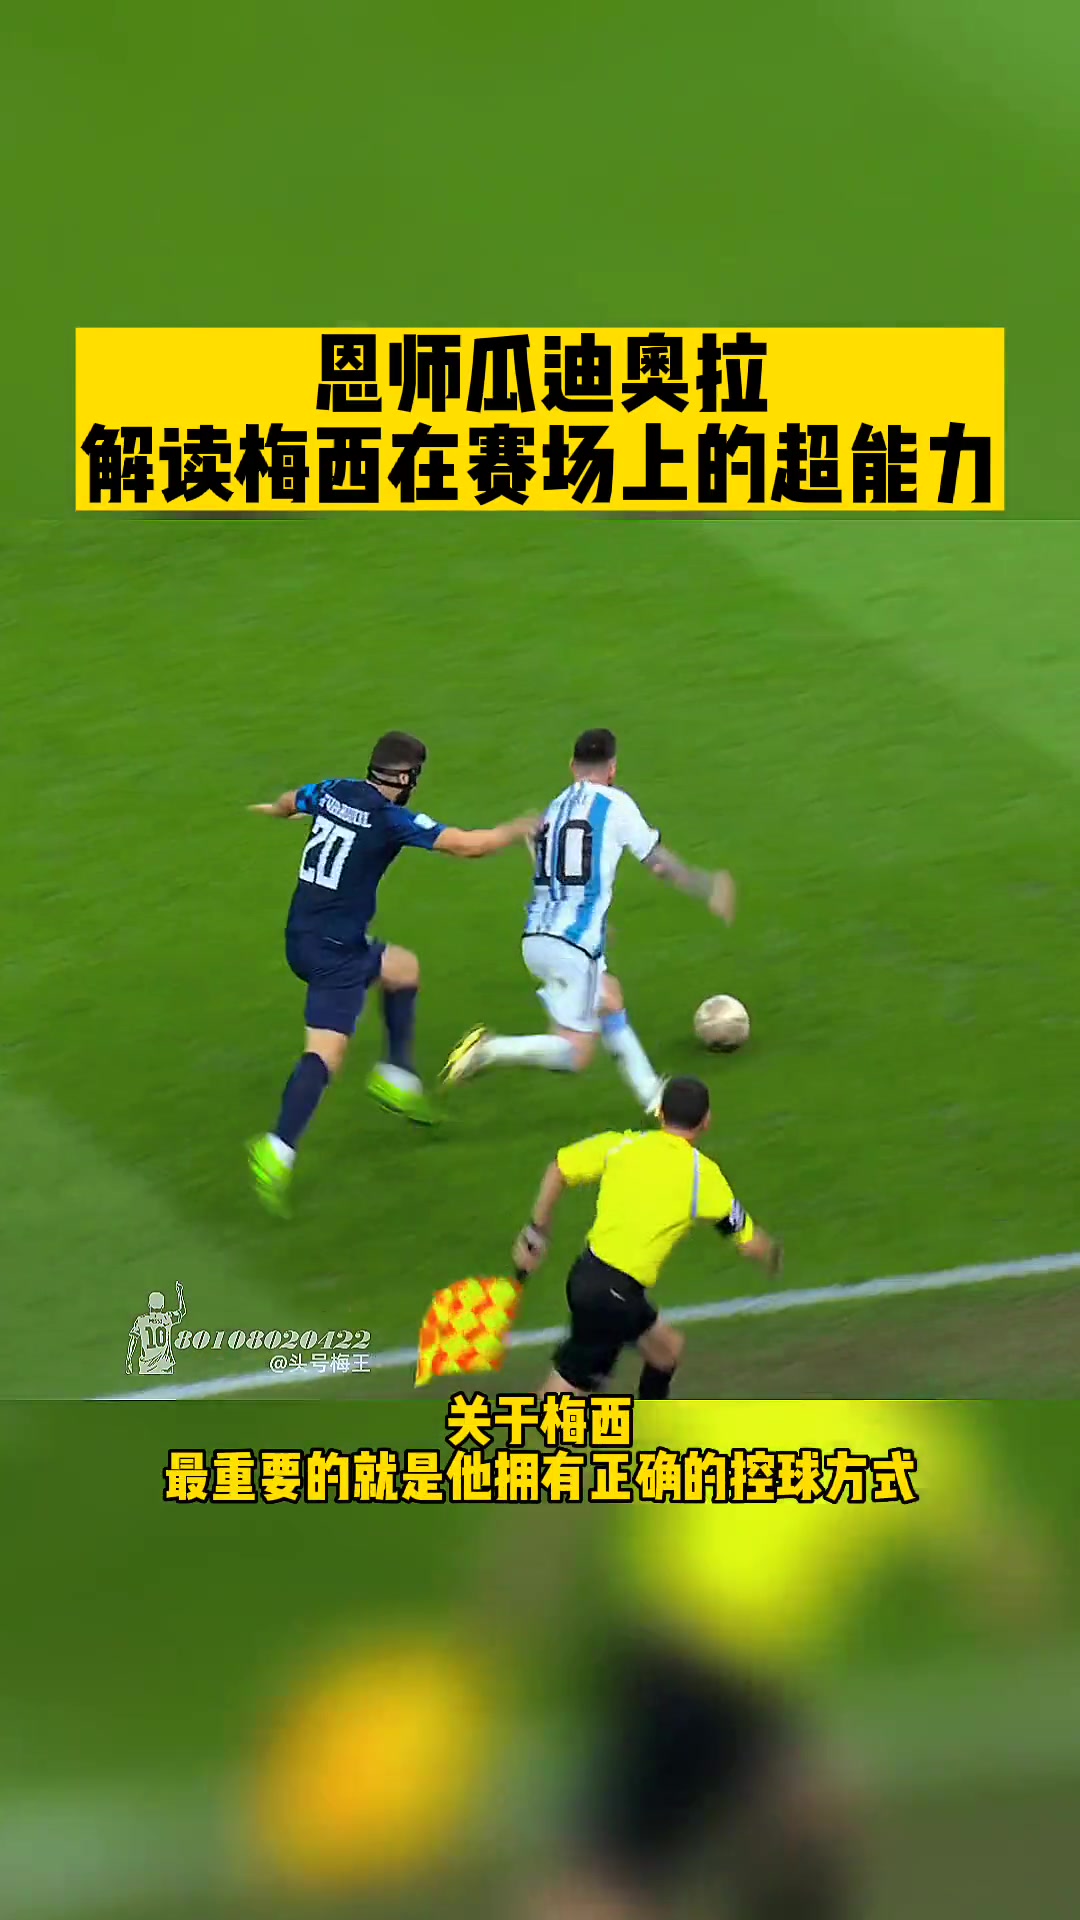 瓜迪奥拉解读梅西在足球场上的超能力他总能嗅到进球